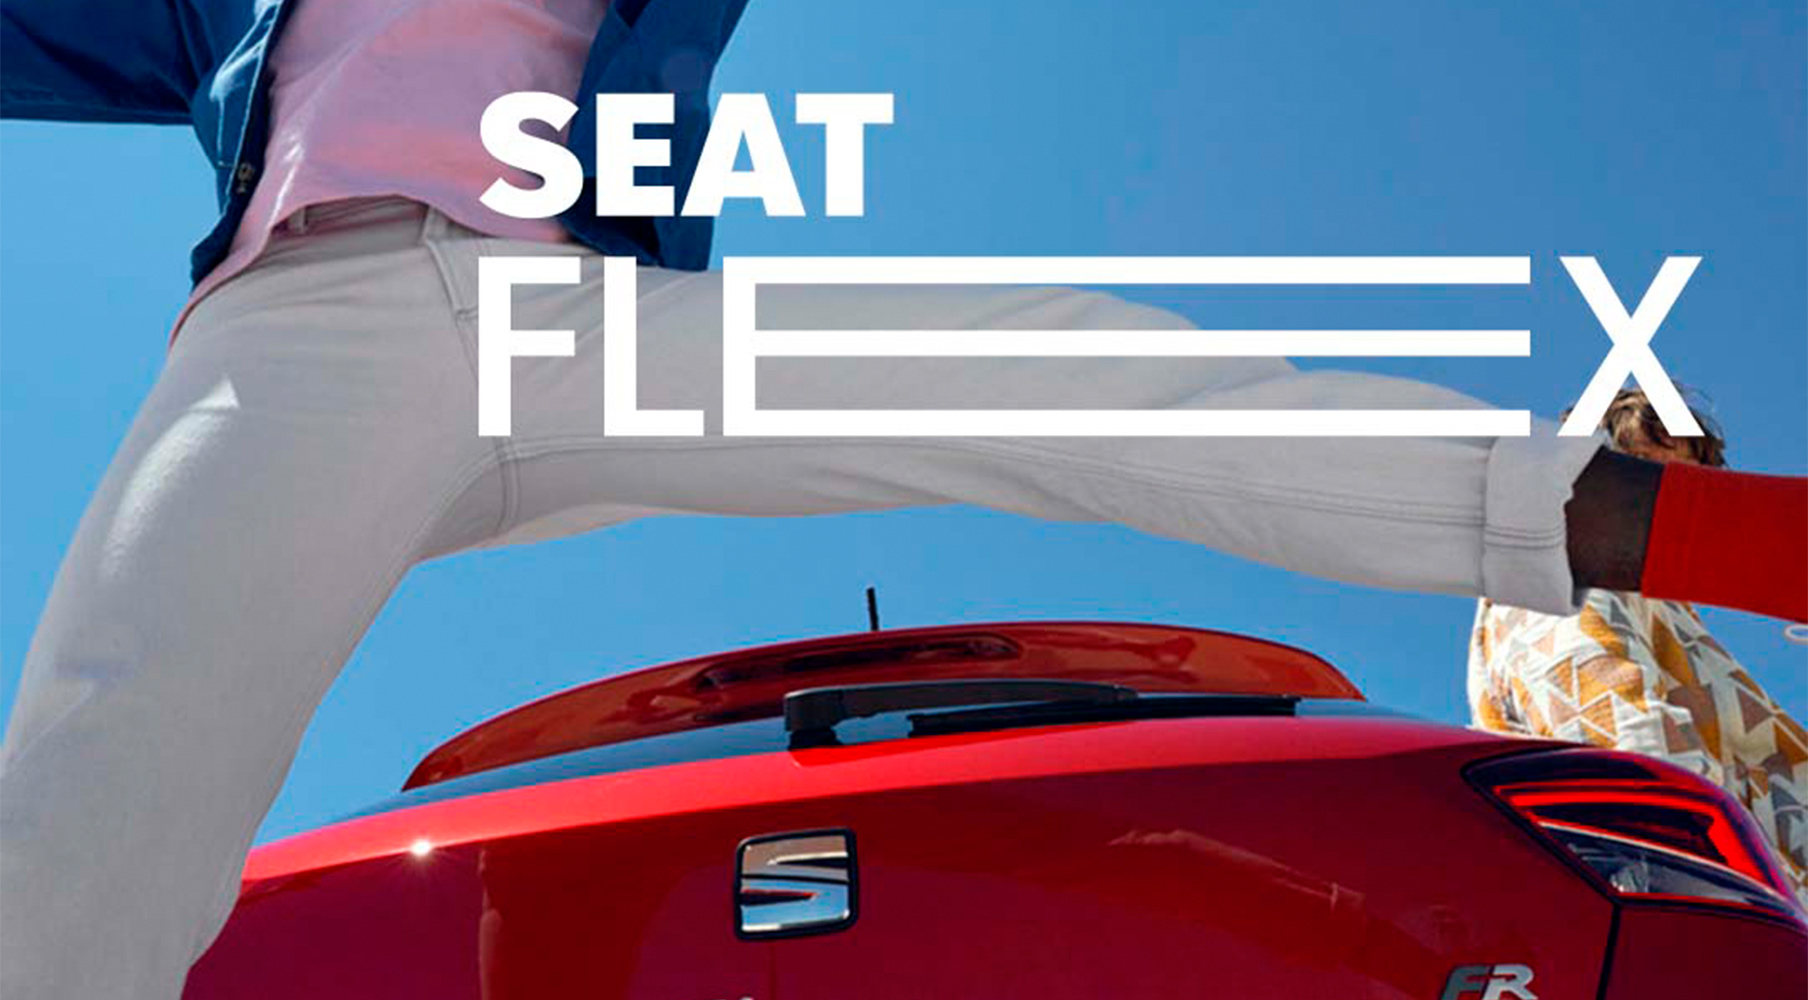 SEAT FLEX  La financiación se adapta a ti